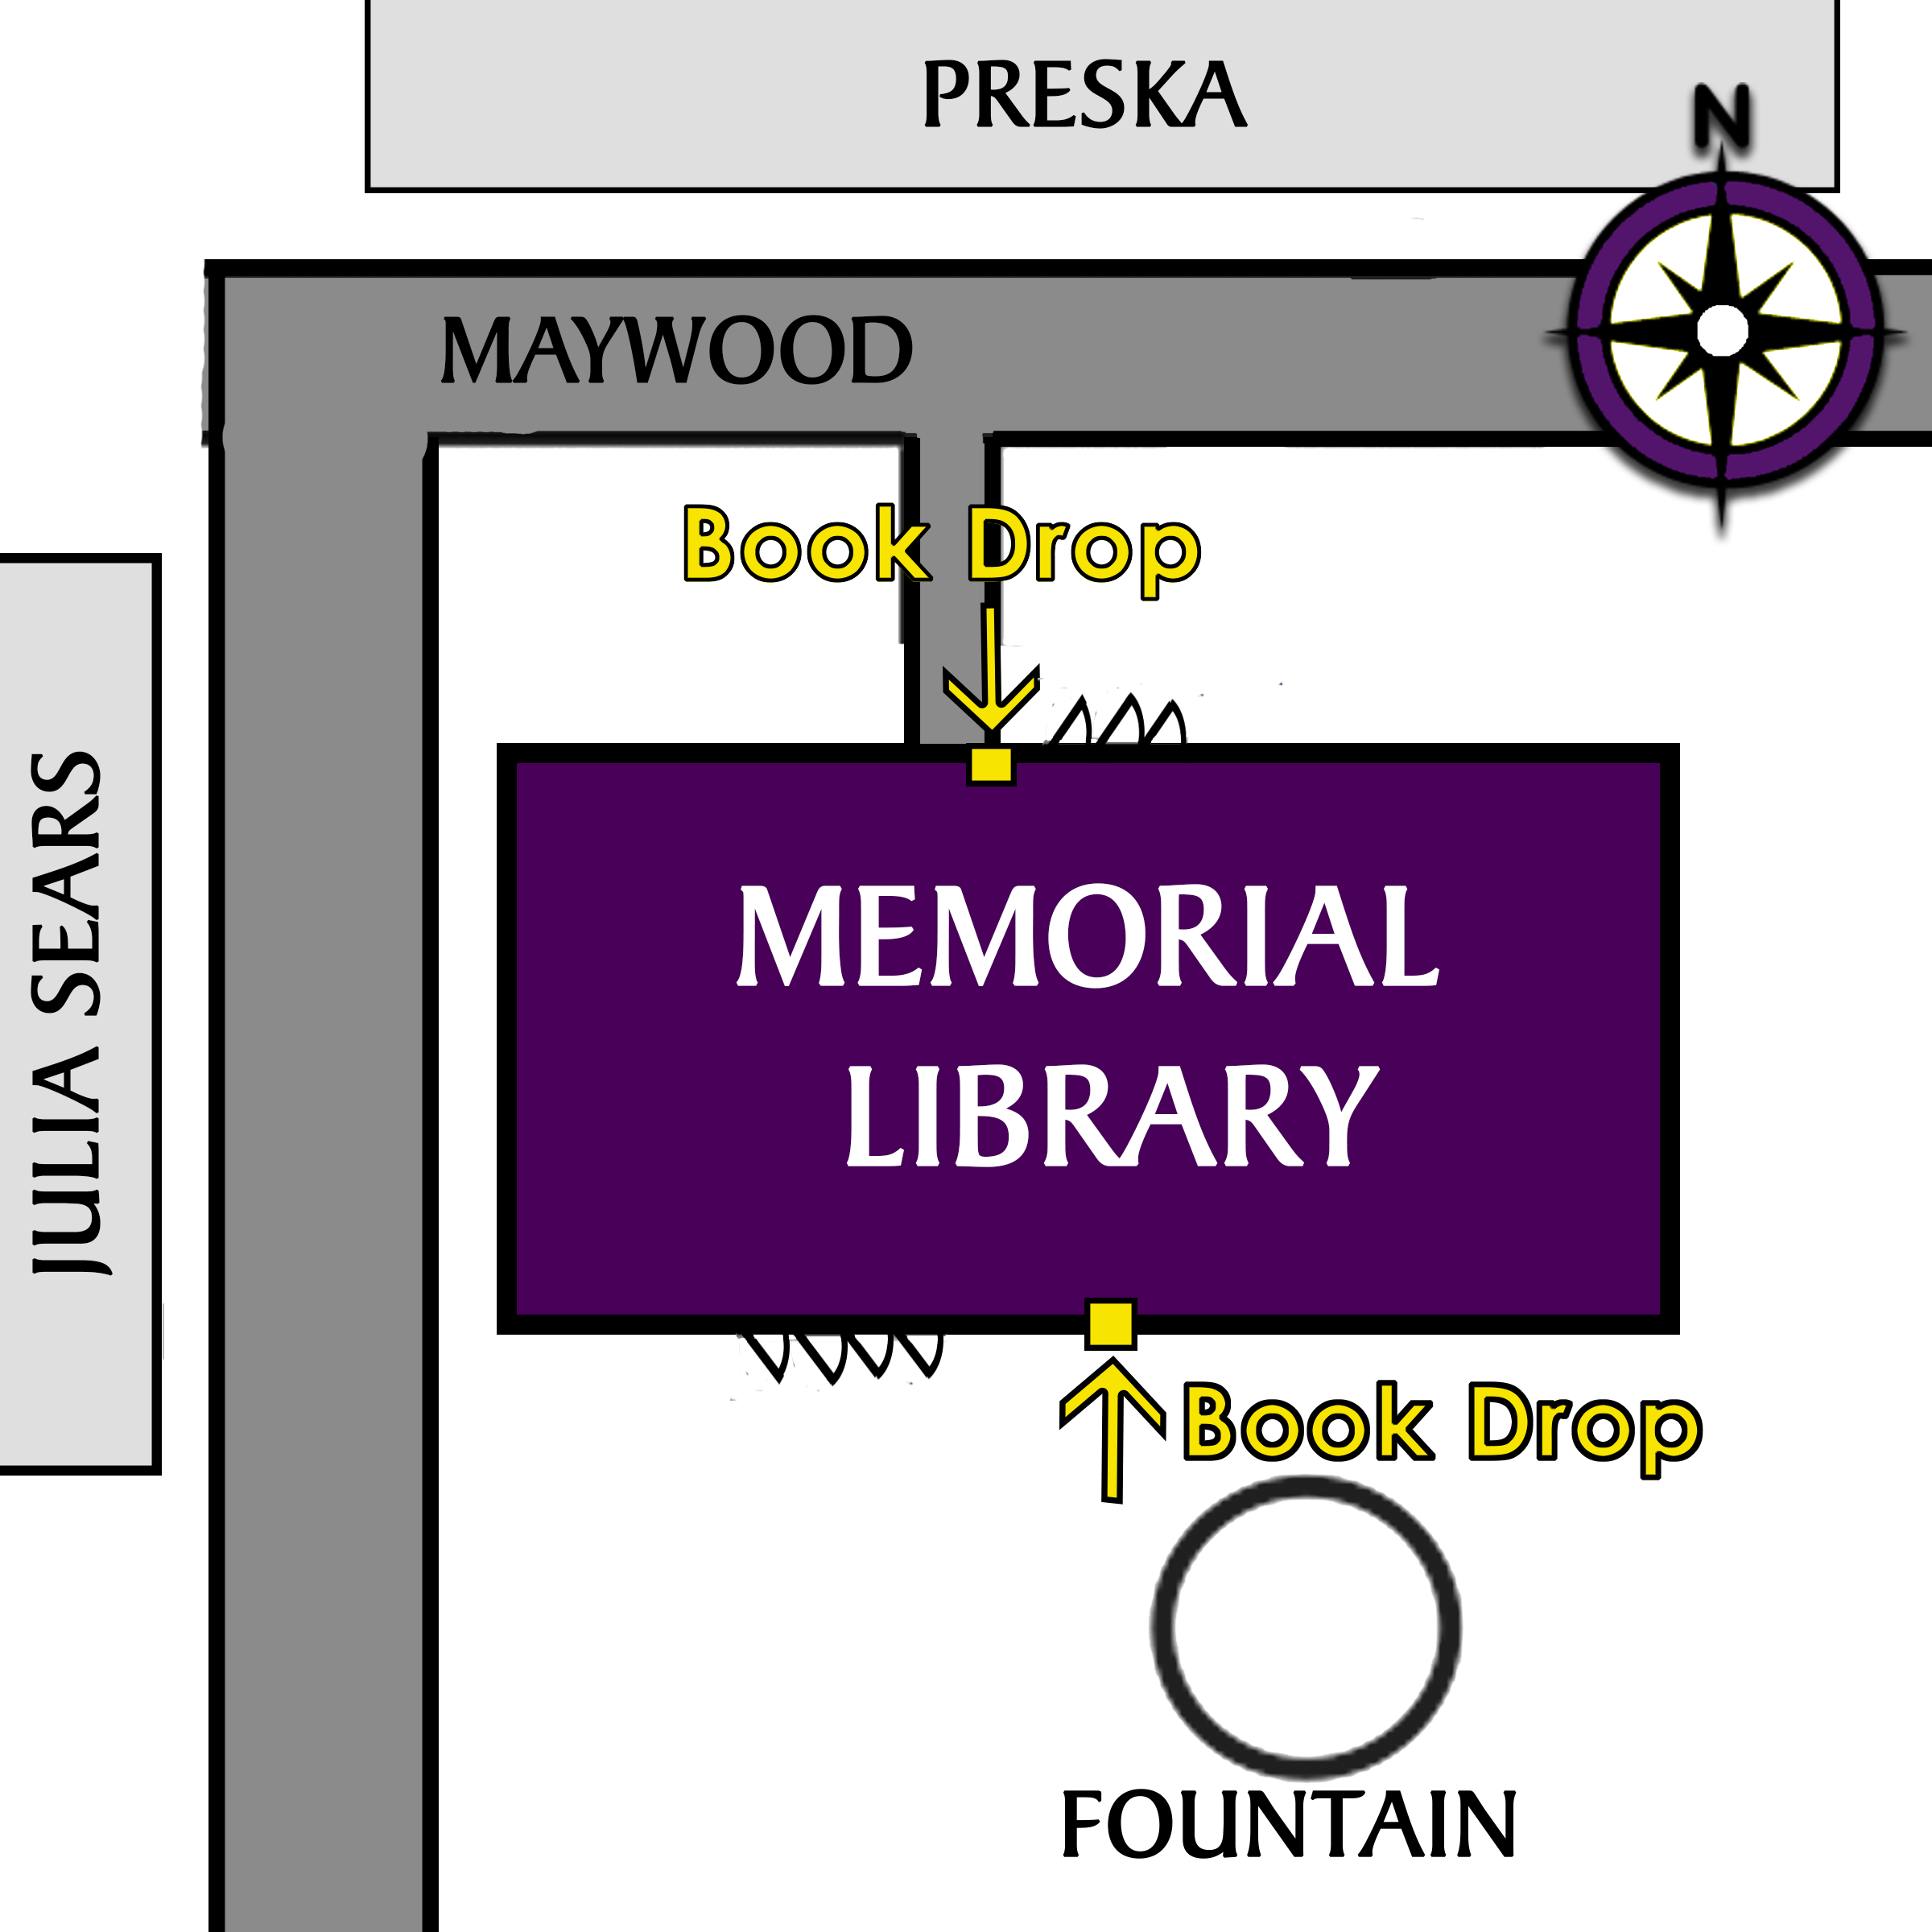 Book drop locations